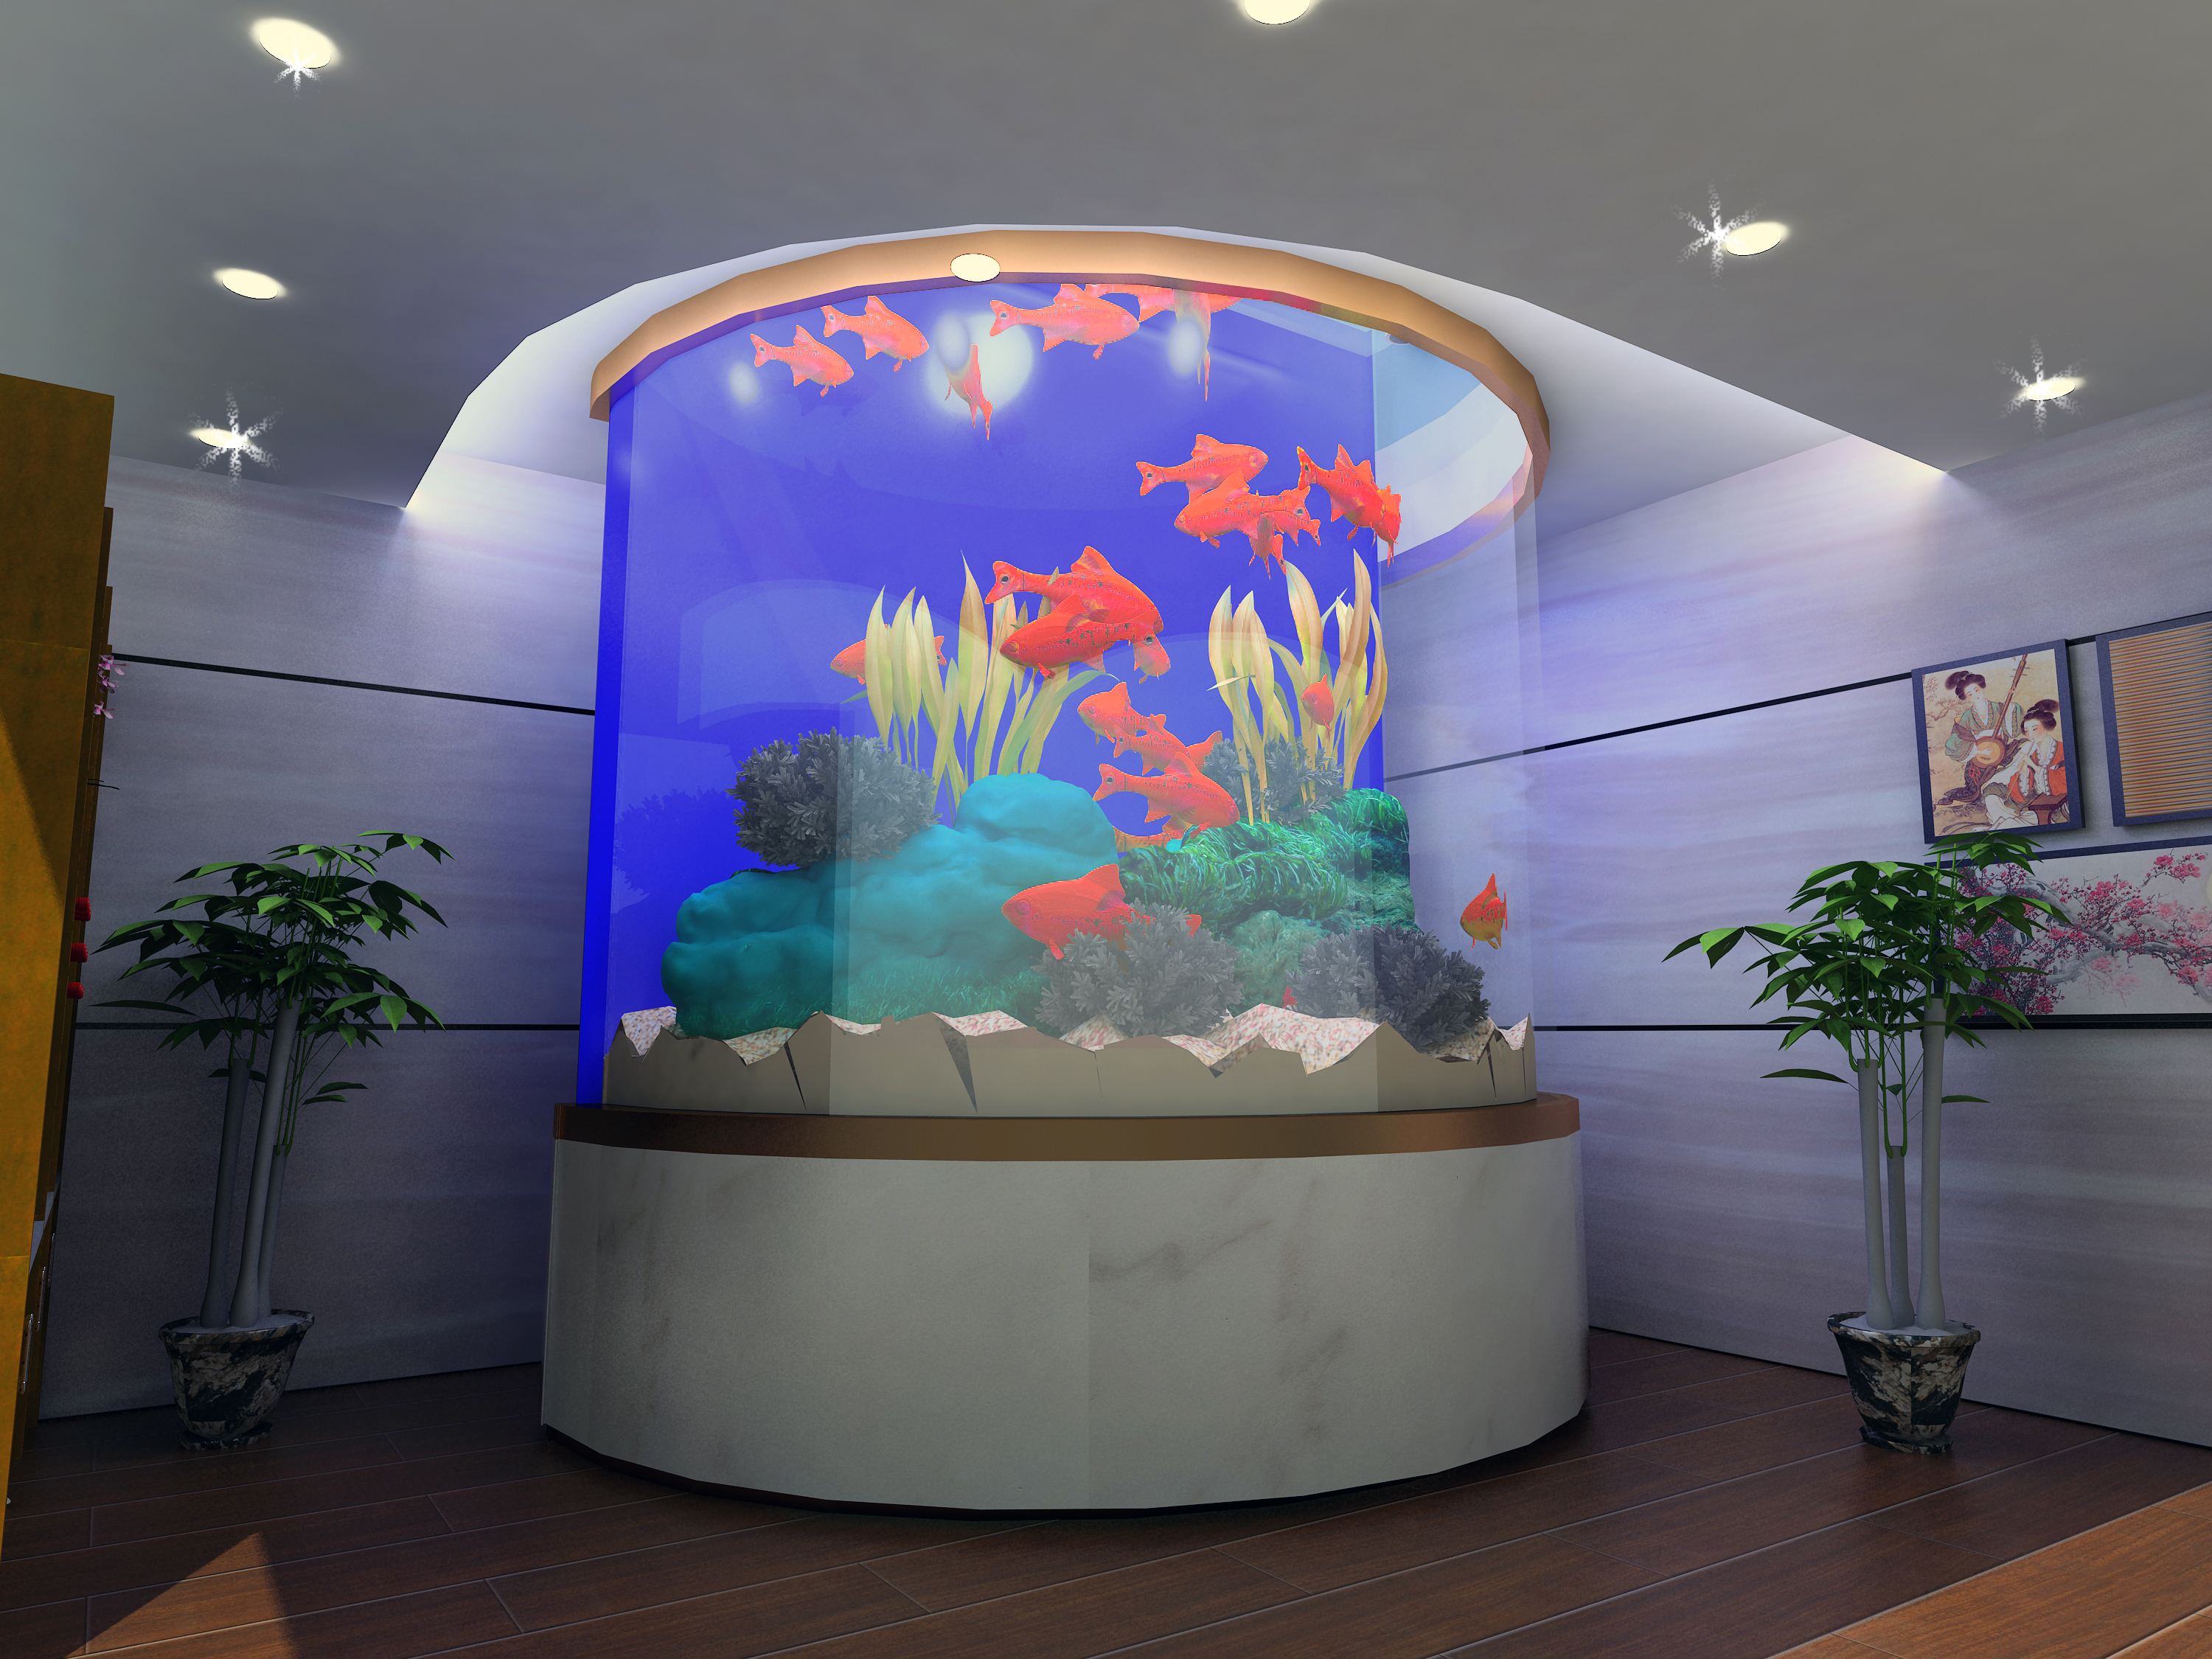 欧式家庭餐厅屏风式鱼缸玄关鱼缸装修效果图_别墅设计图